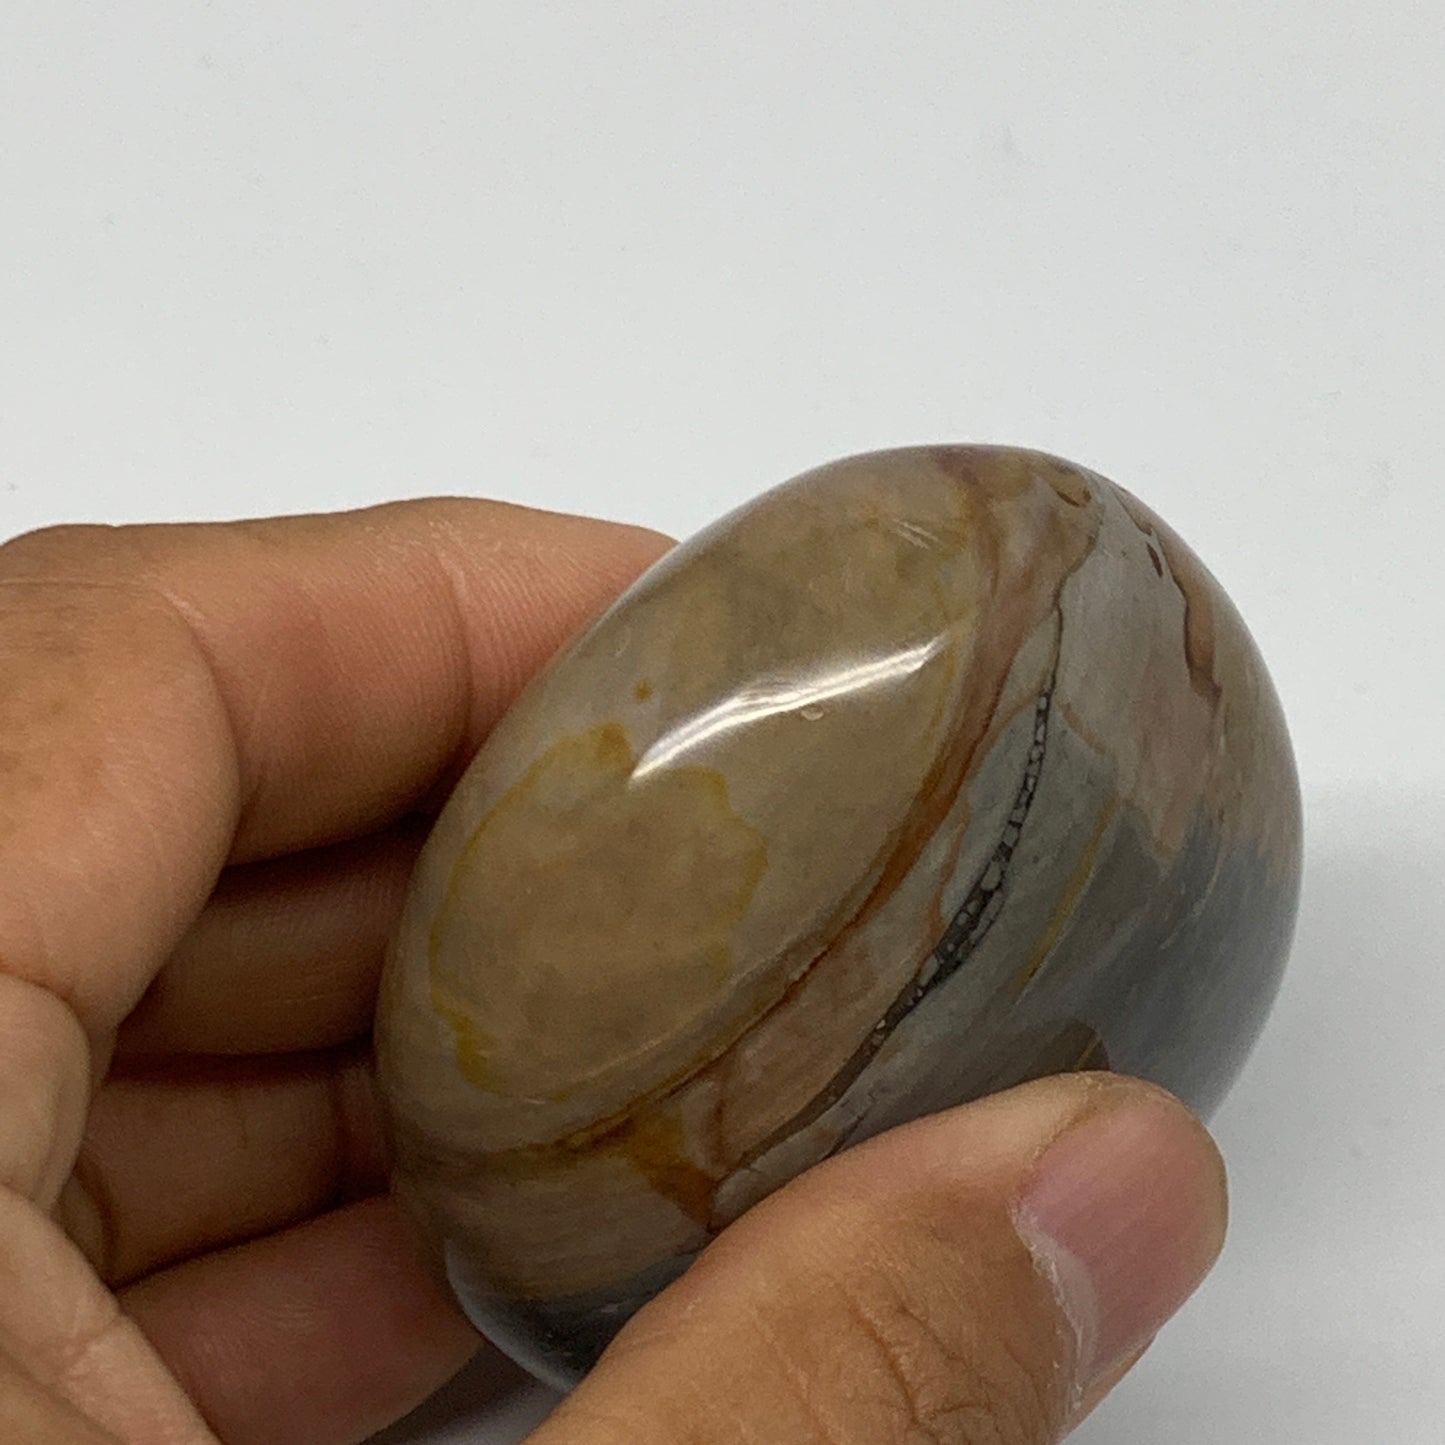 158.3g, 2.5"x2.2"x1.4" Polychrome Jasper Palm-Stone Reiki @Madagascar, B24517